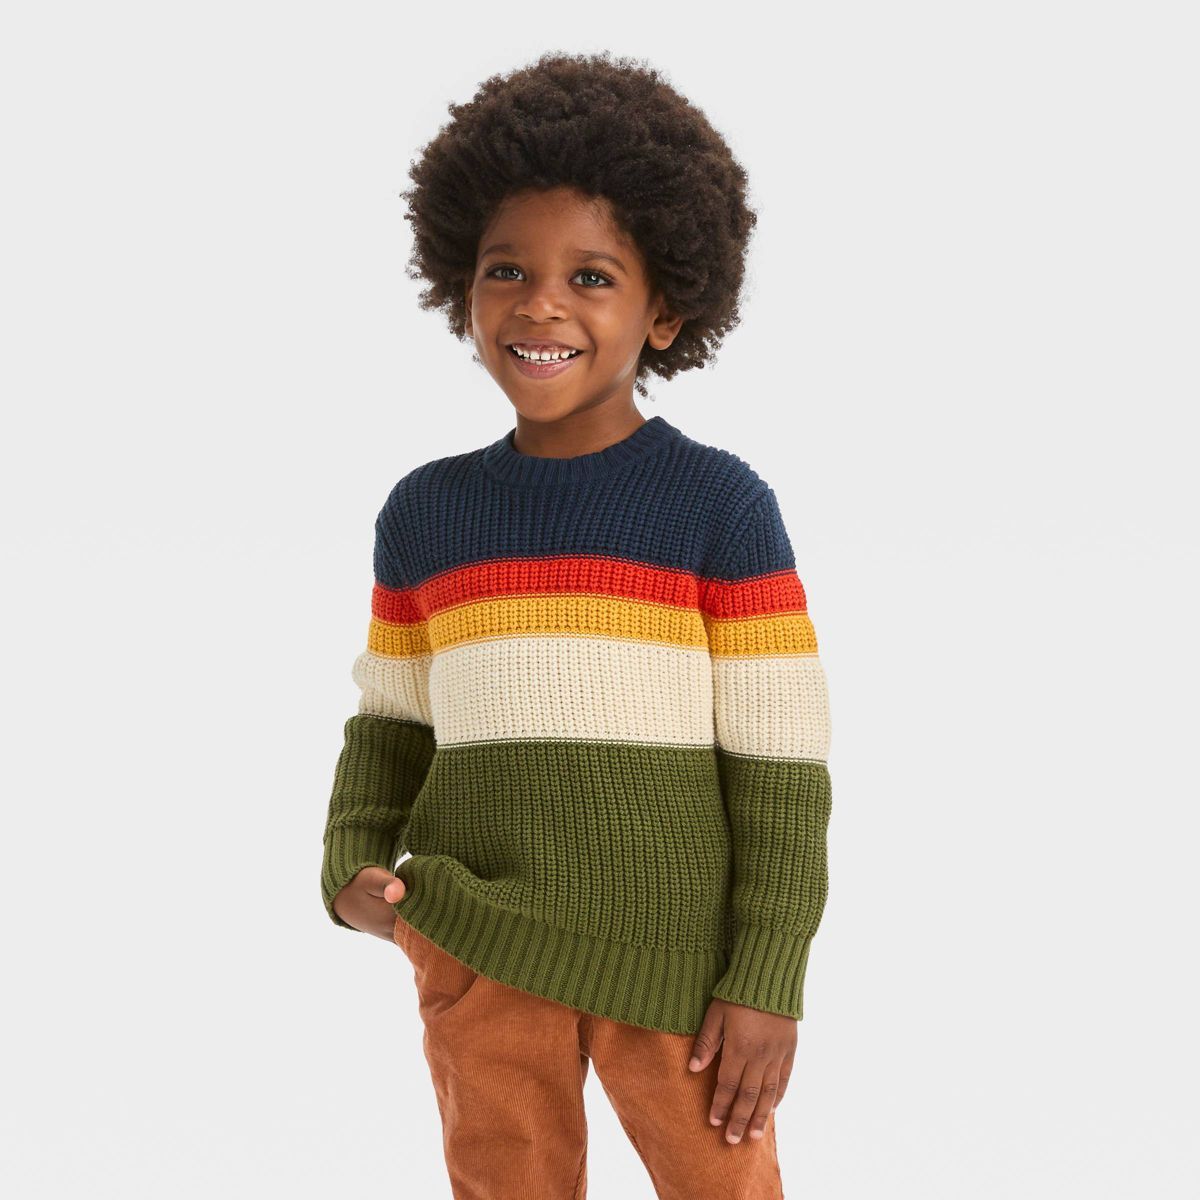 Toddler Boys' Colorblock Sweater - Cat & Jack™ Olive Green/Navy Blue/Orange | Target